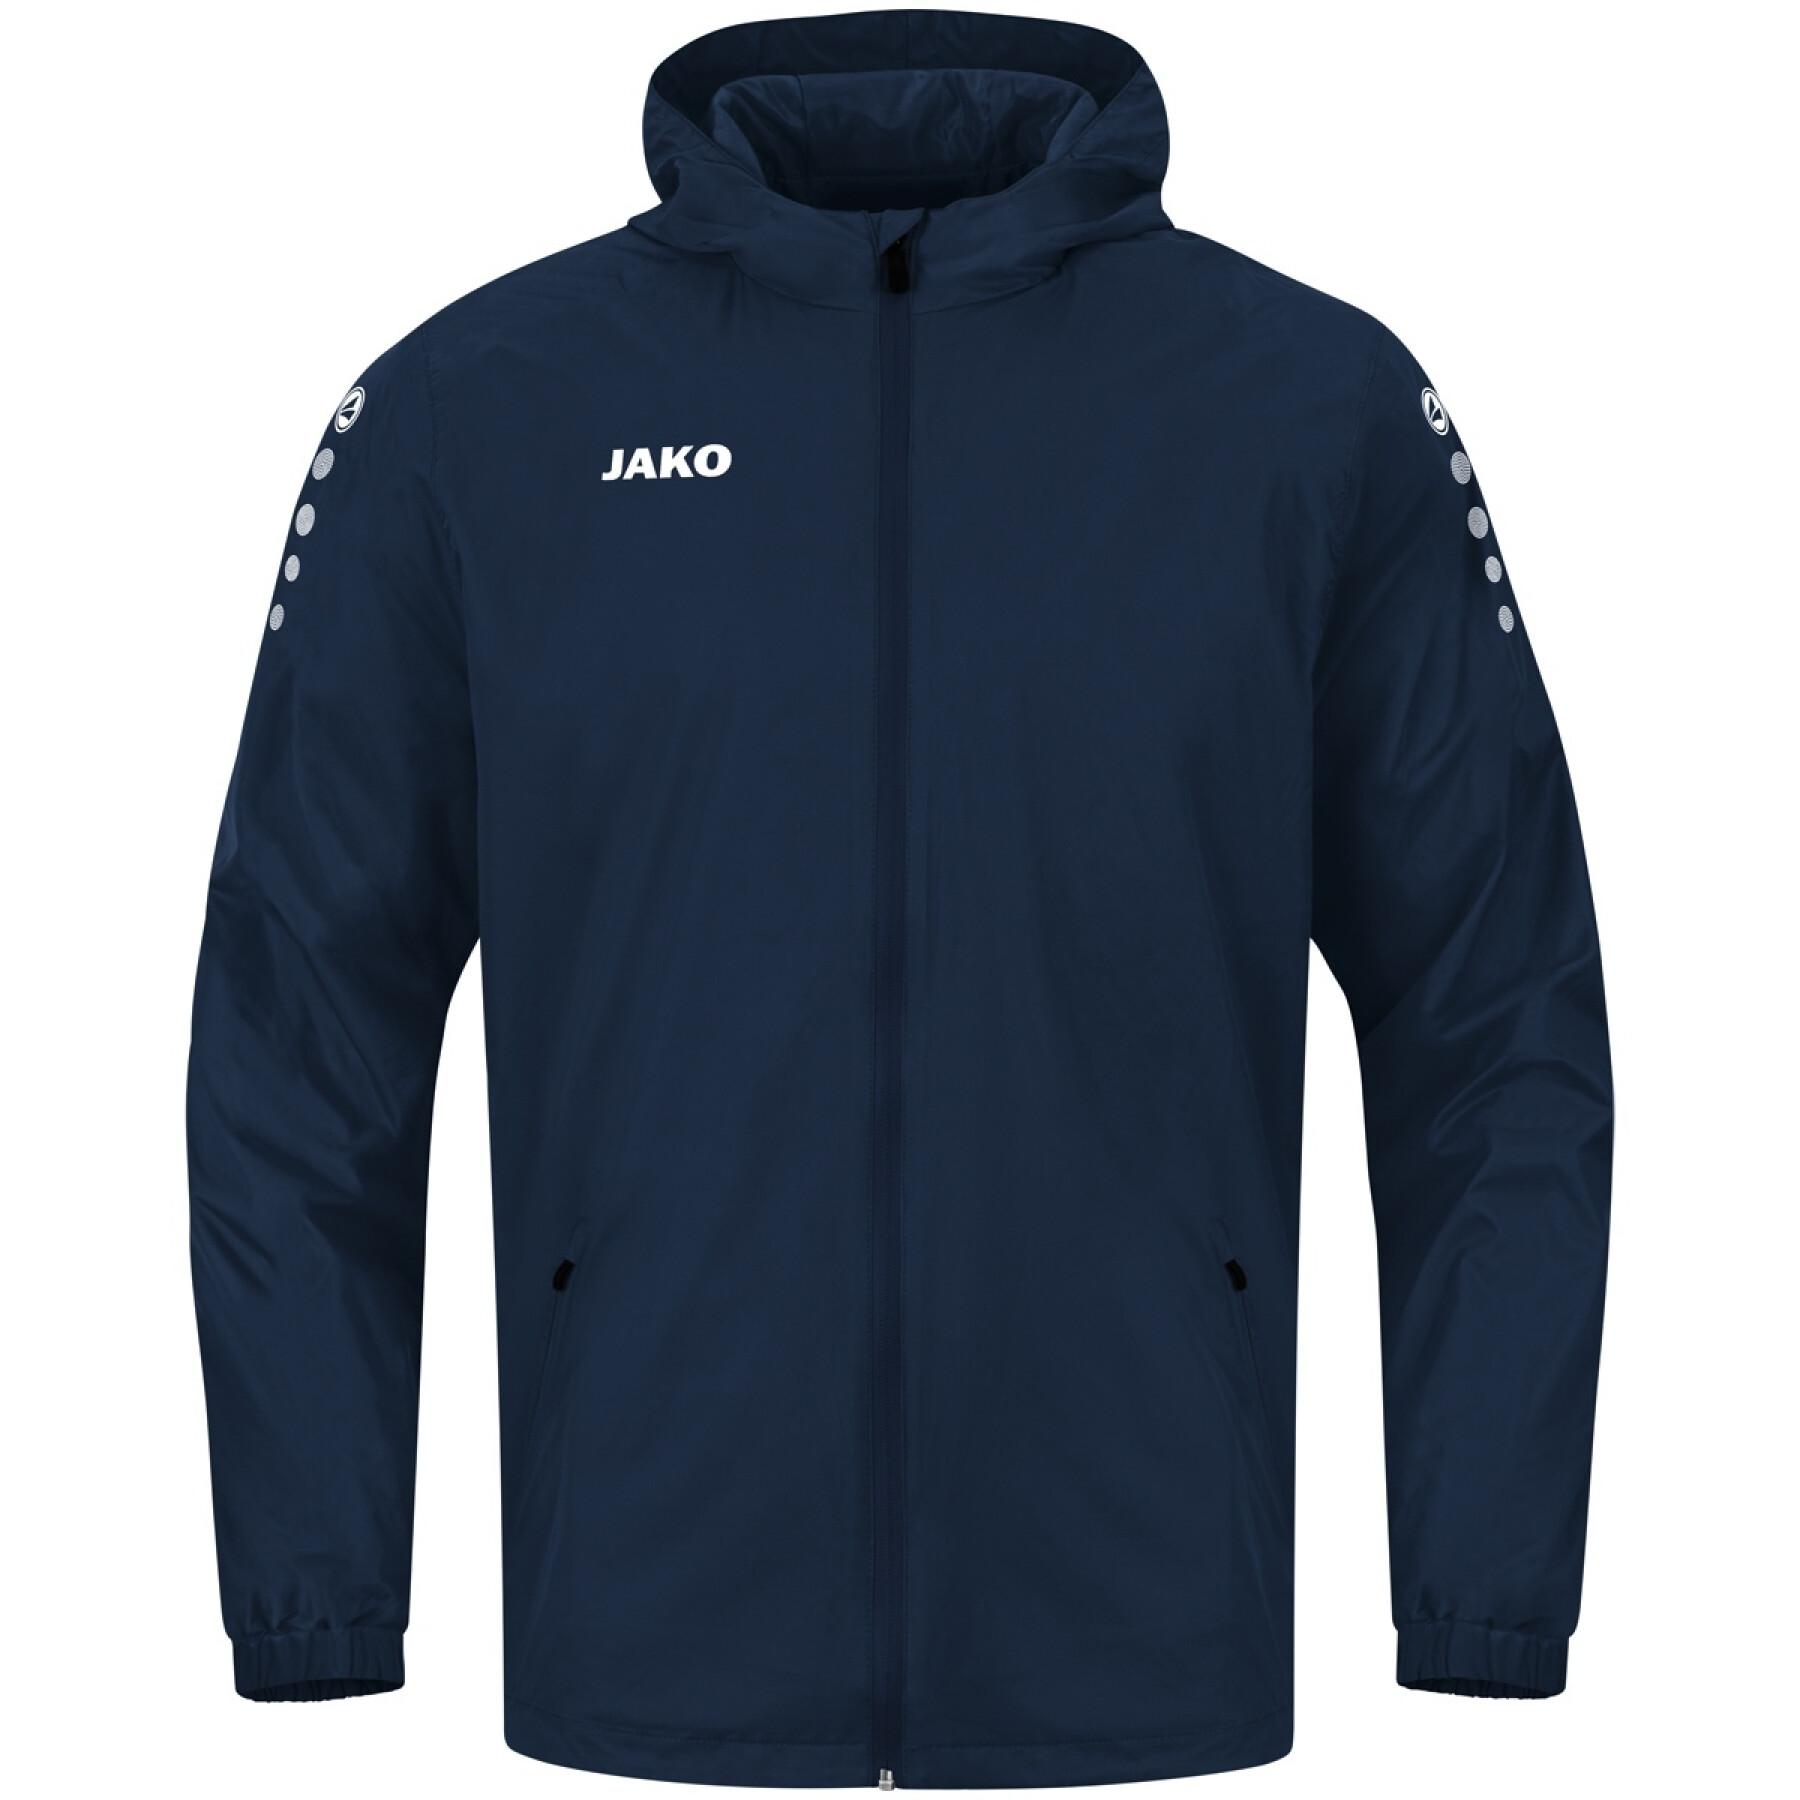 Waterproof jacket for children Jako Team 2.0